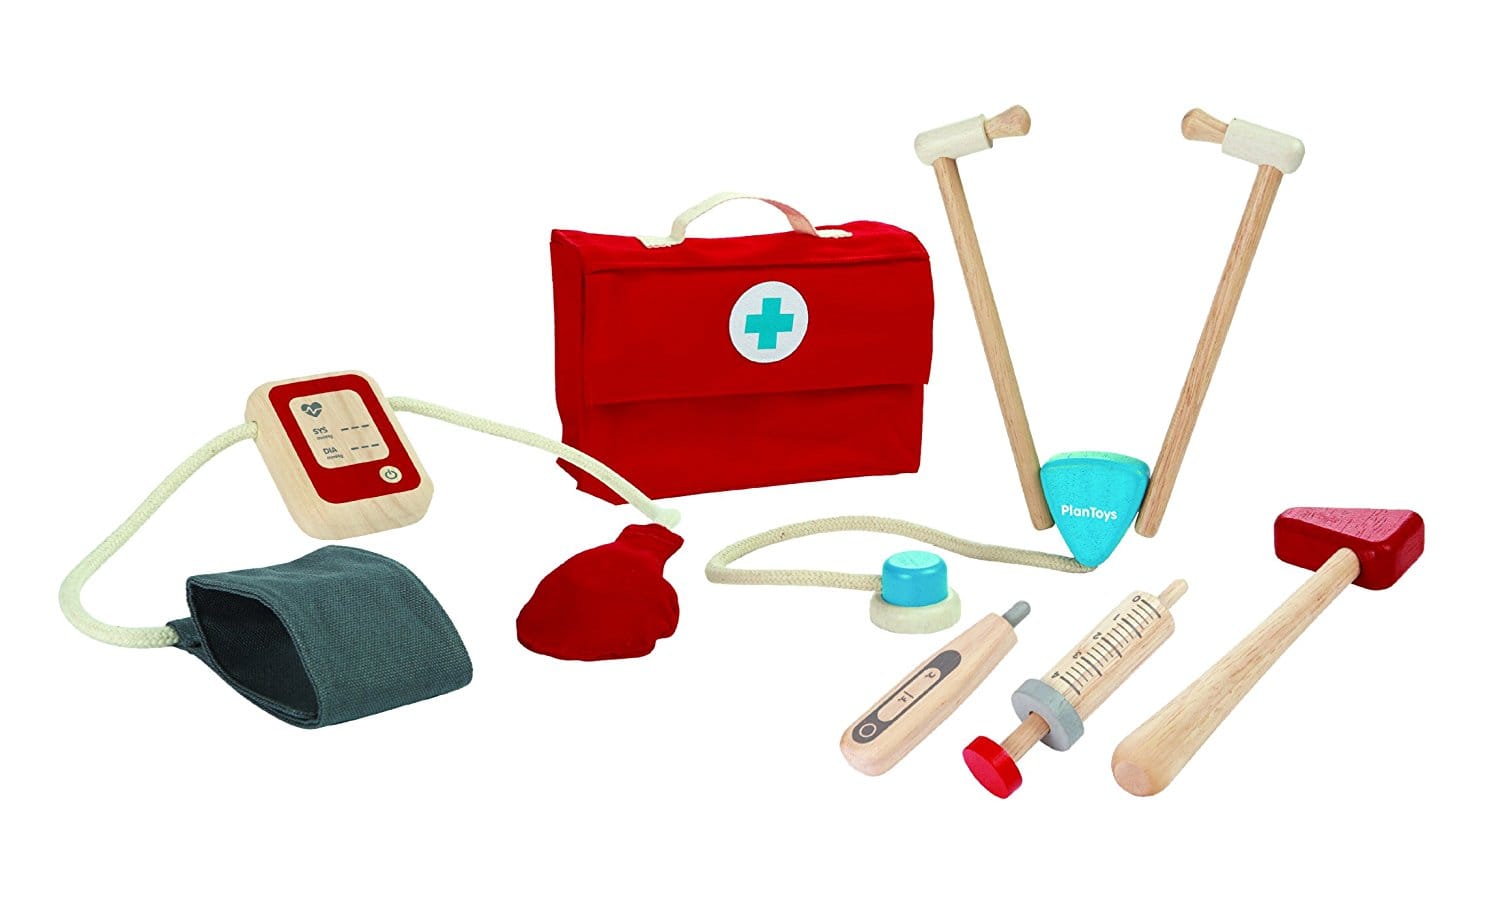 Malette de l'infirmiere ou valise de docteur pour enfant, un jouet